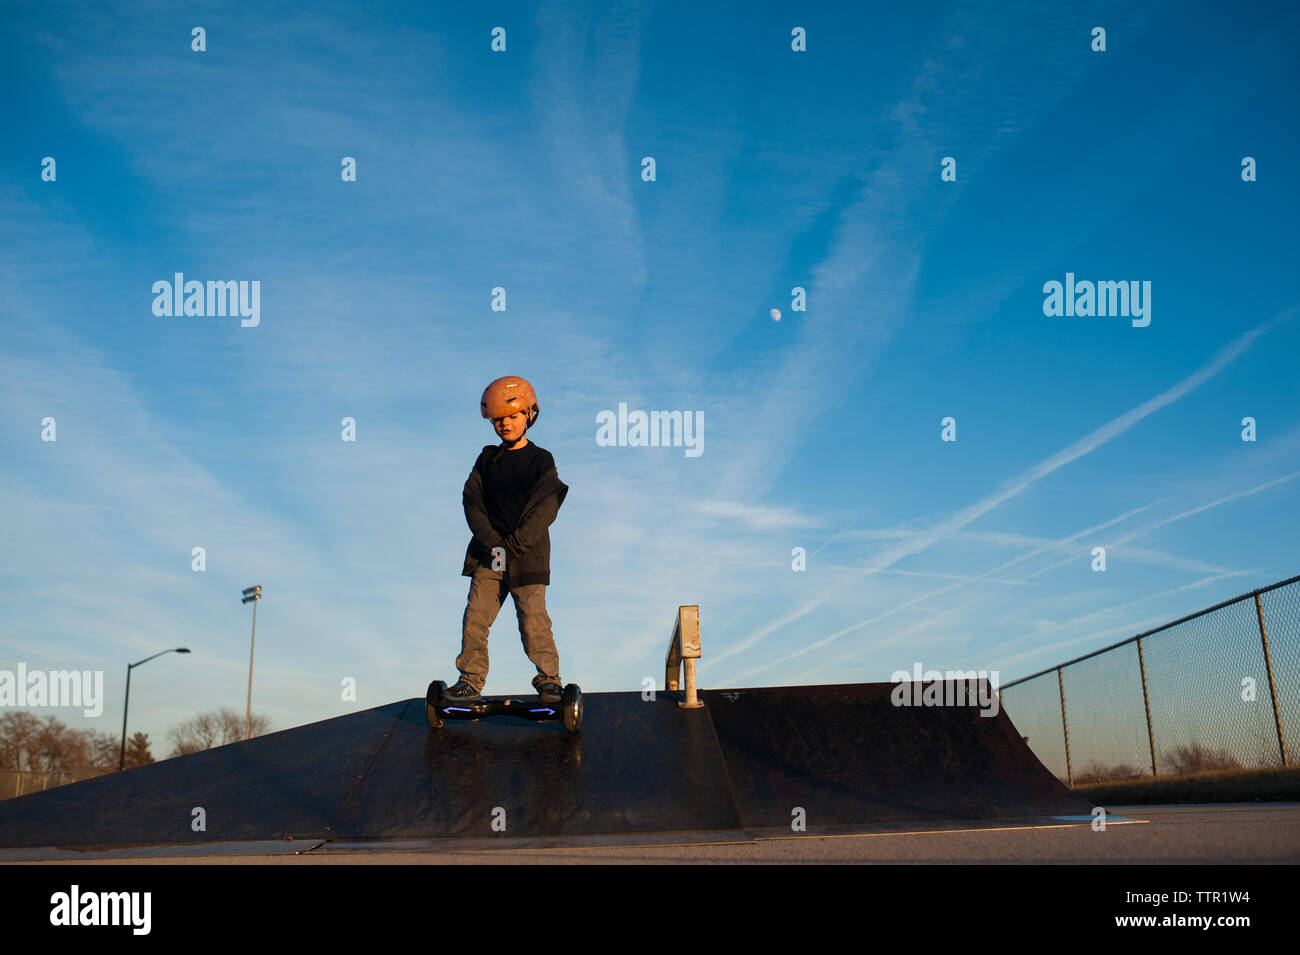 Petit garçon descente rampe de skate park contre le ciel bleu Banque D'Images